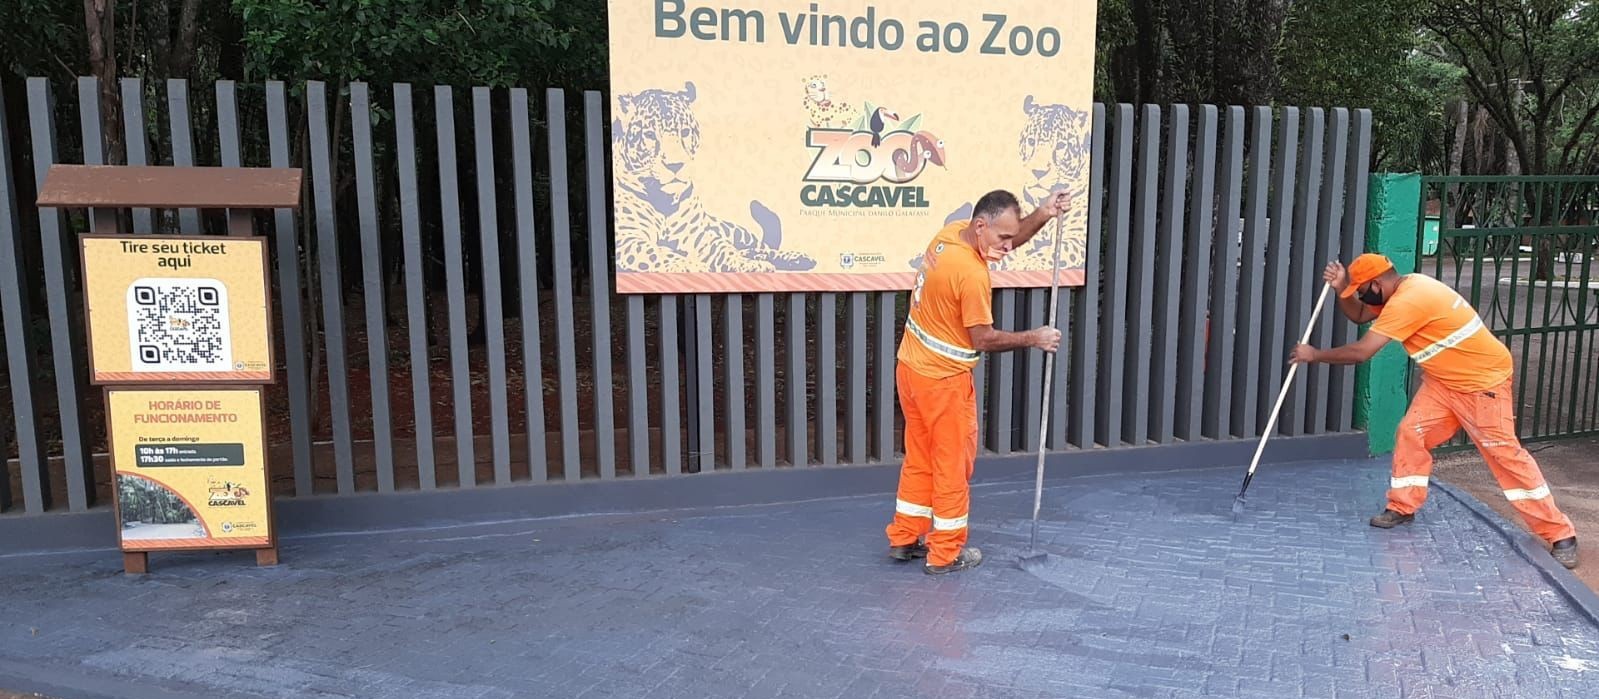 Zoo estará aberto no feriado, mas visitas precisam ser agendadas